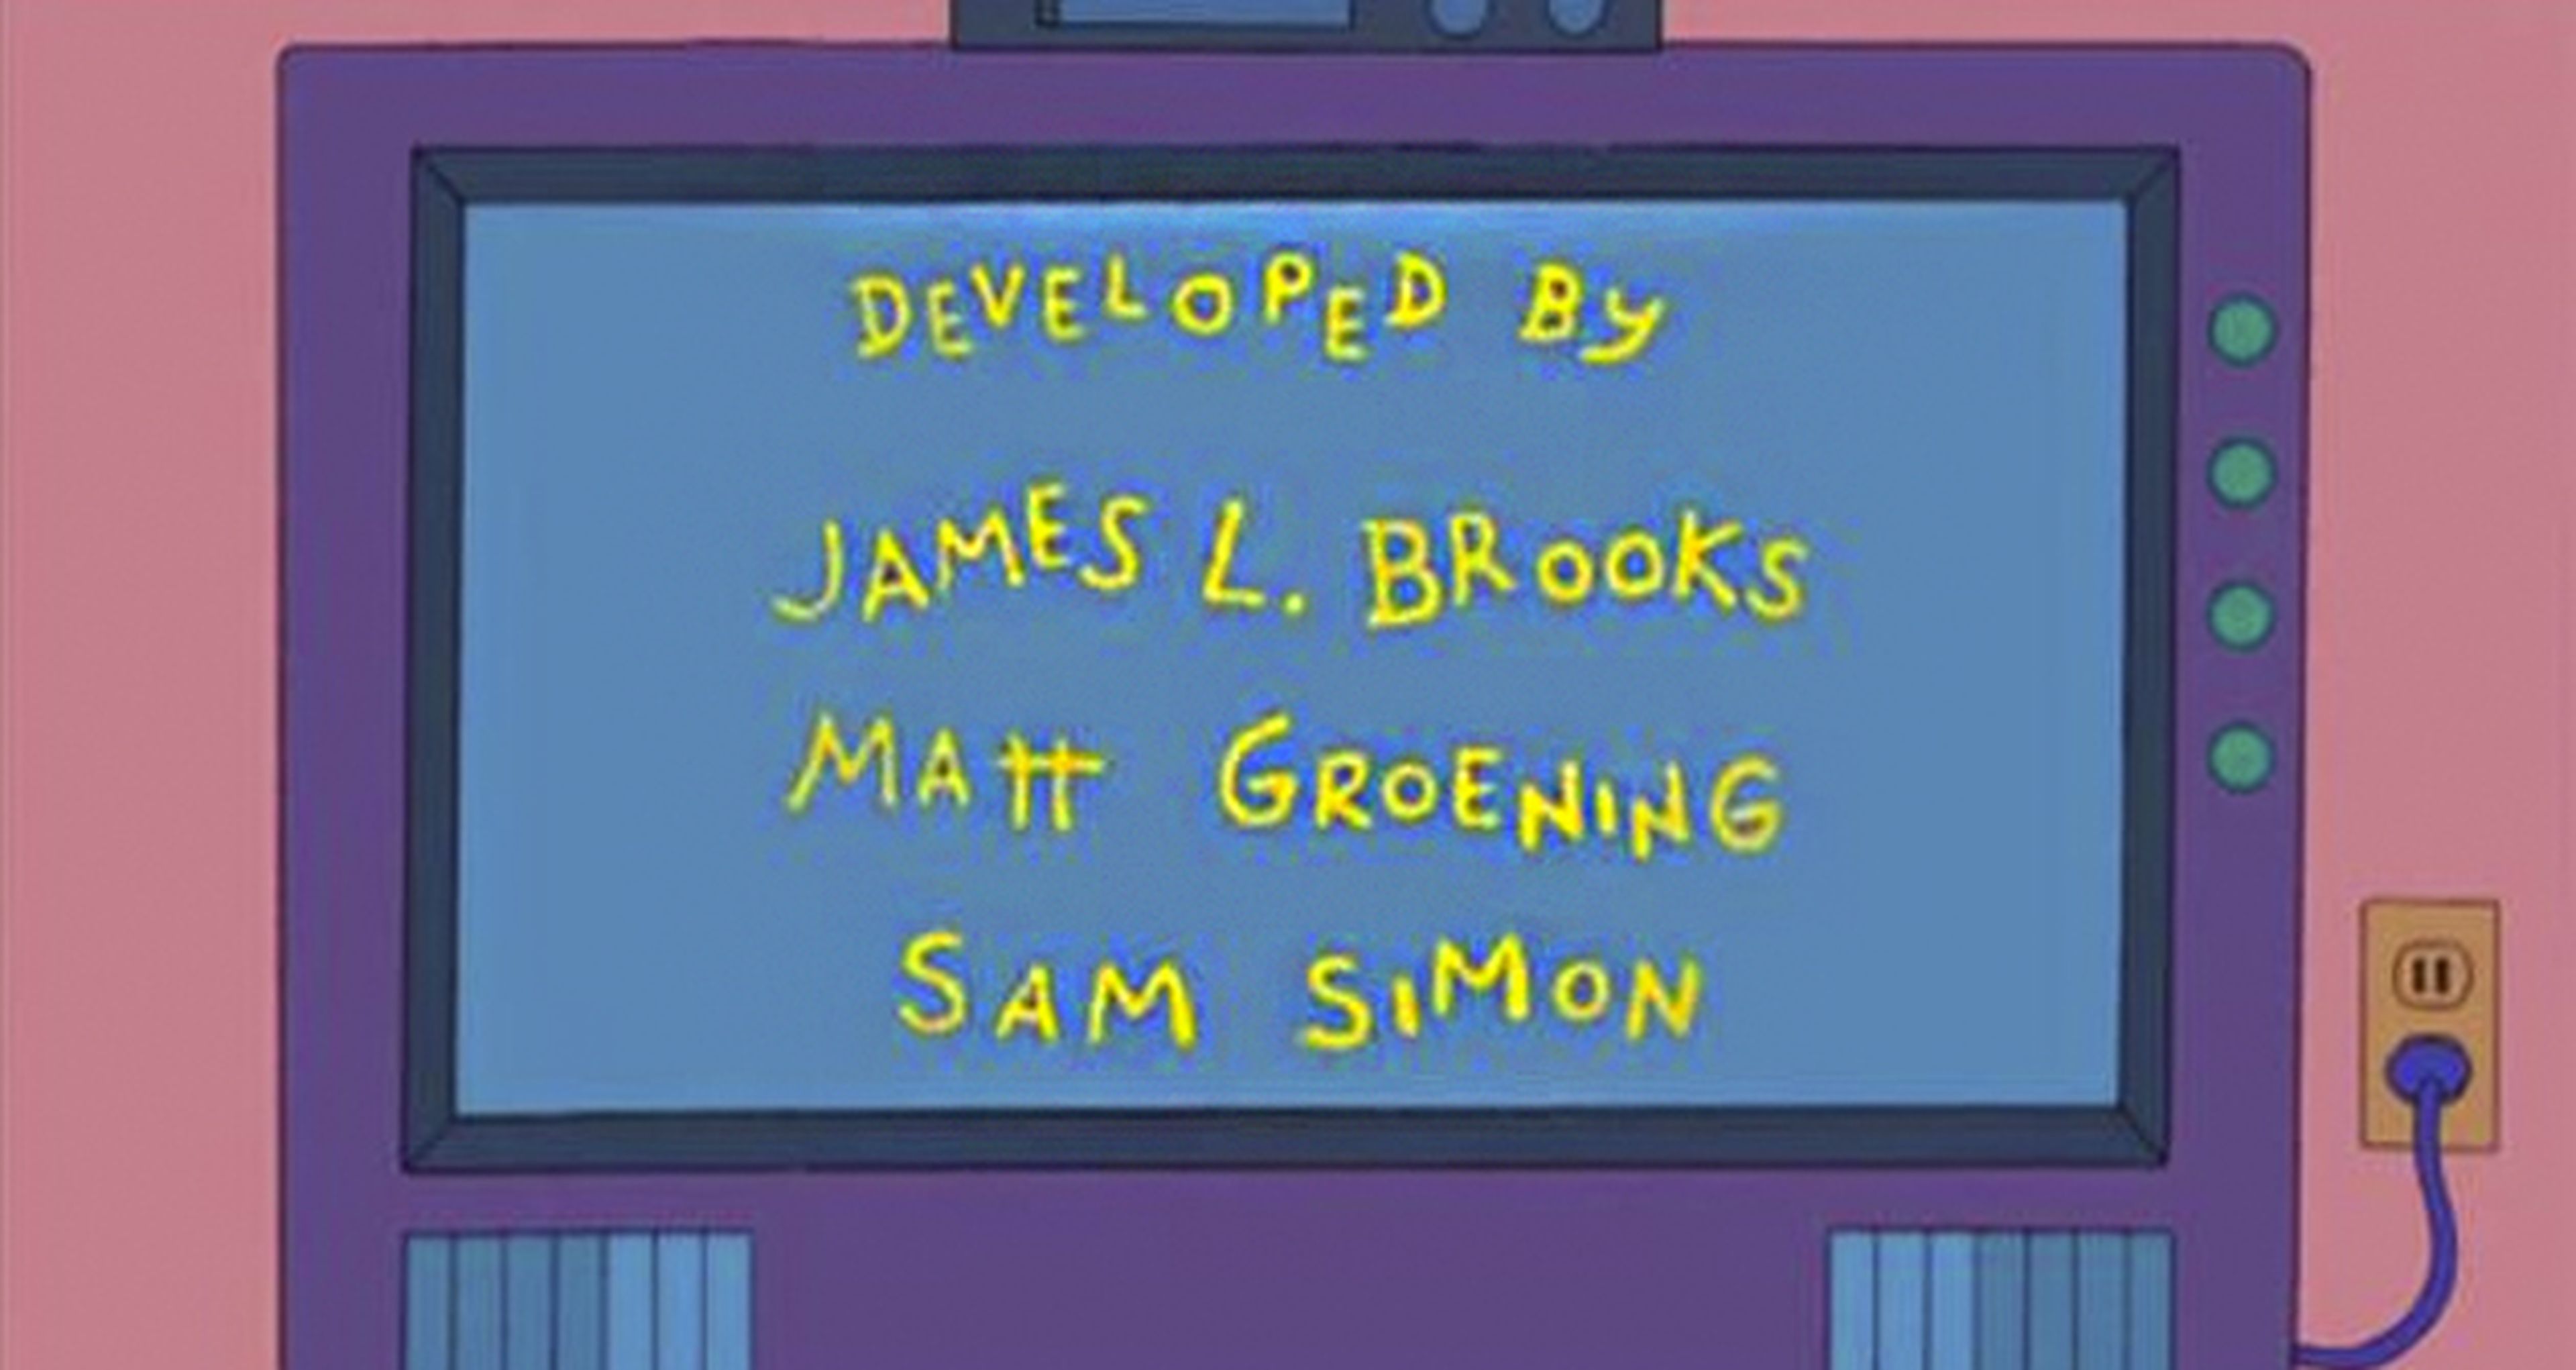 Fallece Sam Simon, uno de los creadores de Los Simpson